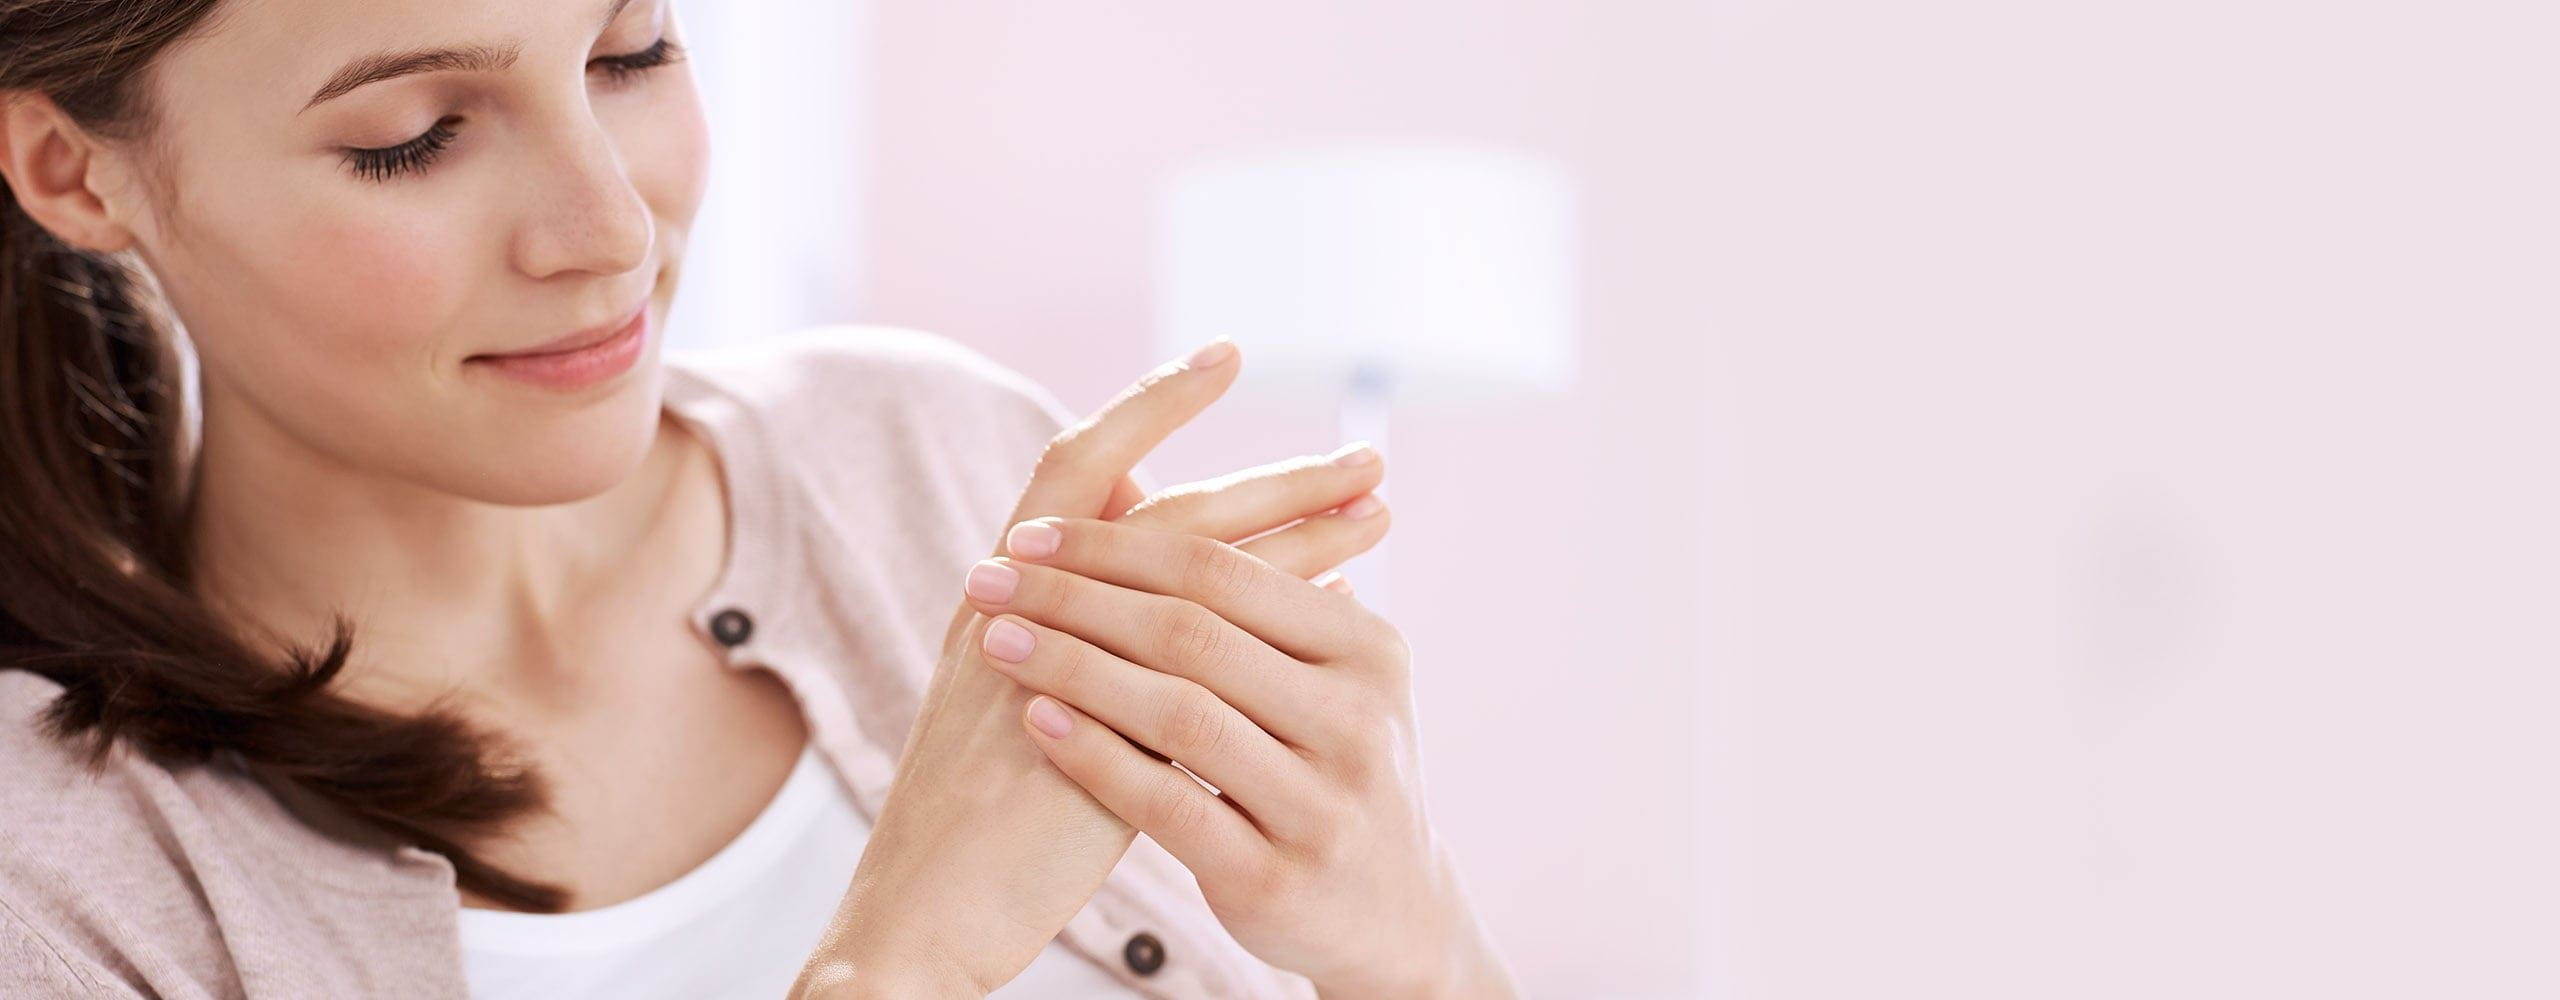 Gel hydroalcoolique, savon et irritation des mains (dermatite) - NIVEA